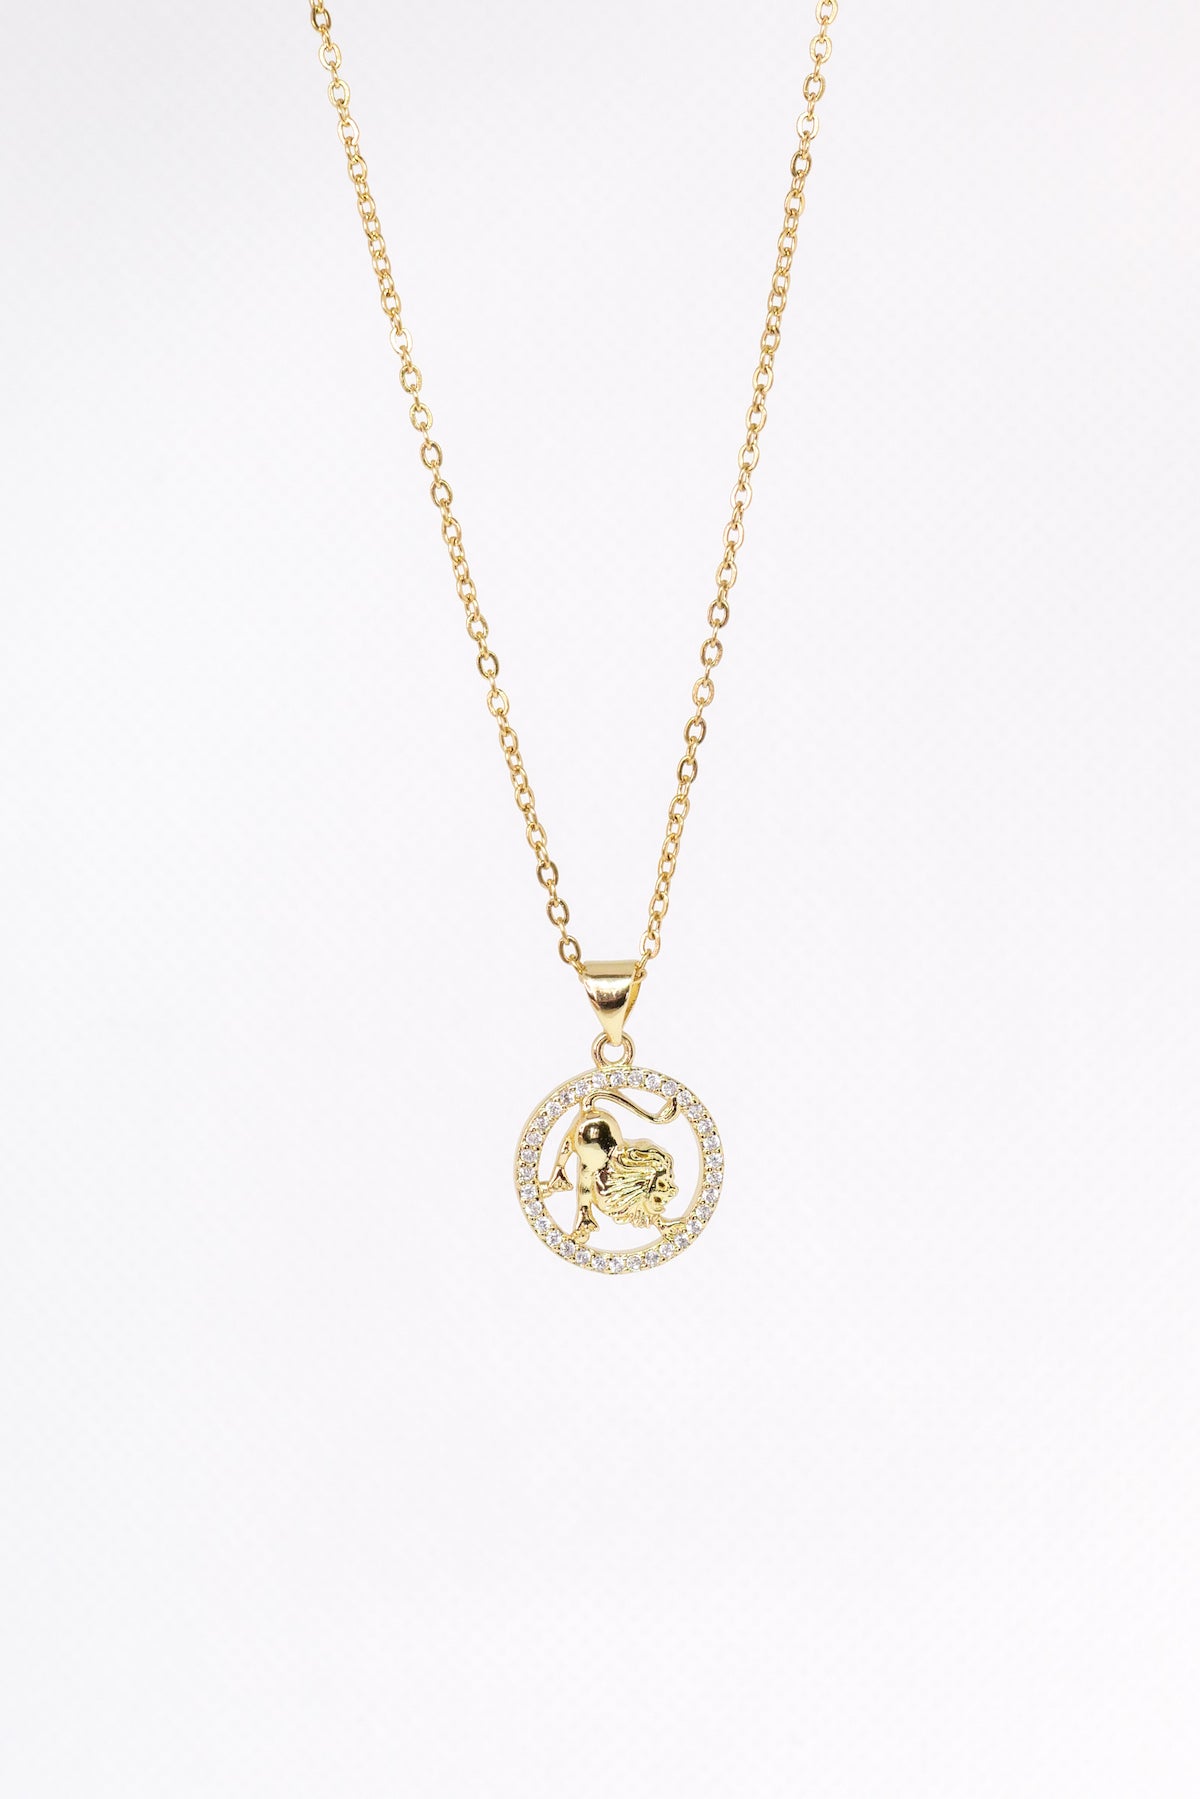 Leo zodiac necklace